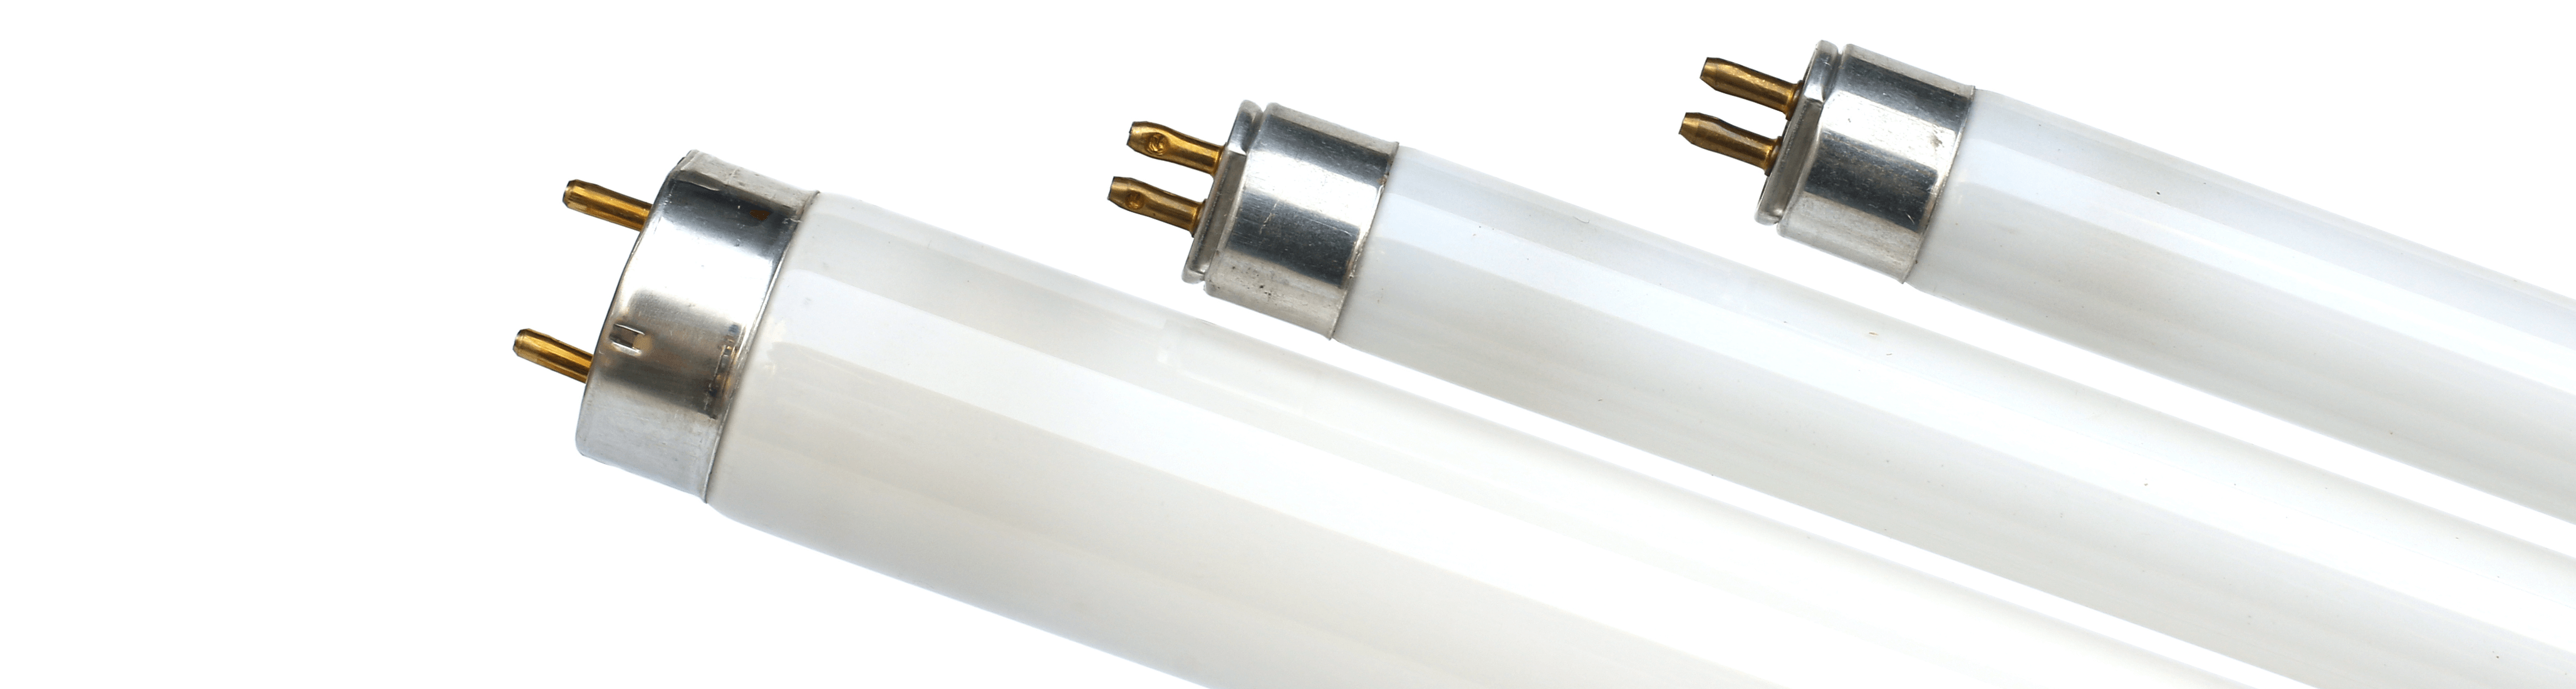 Como cambiar un tubo fluorescente por un tubo LED? - GreenIce